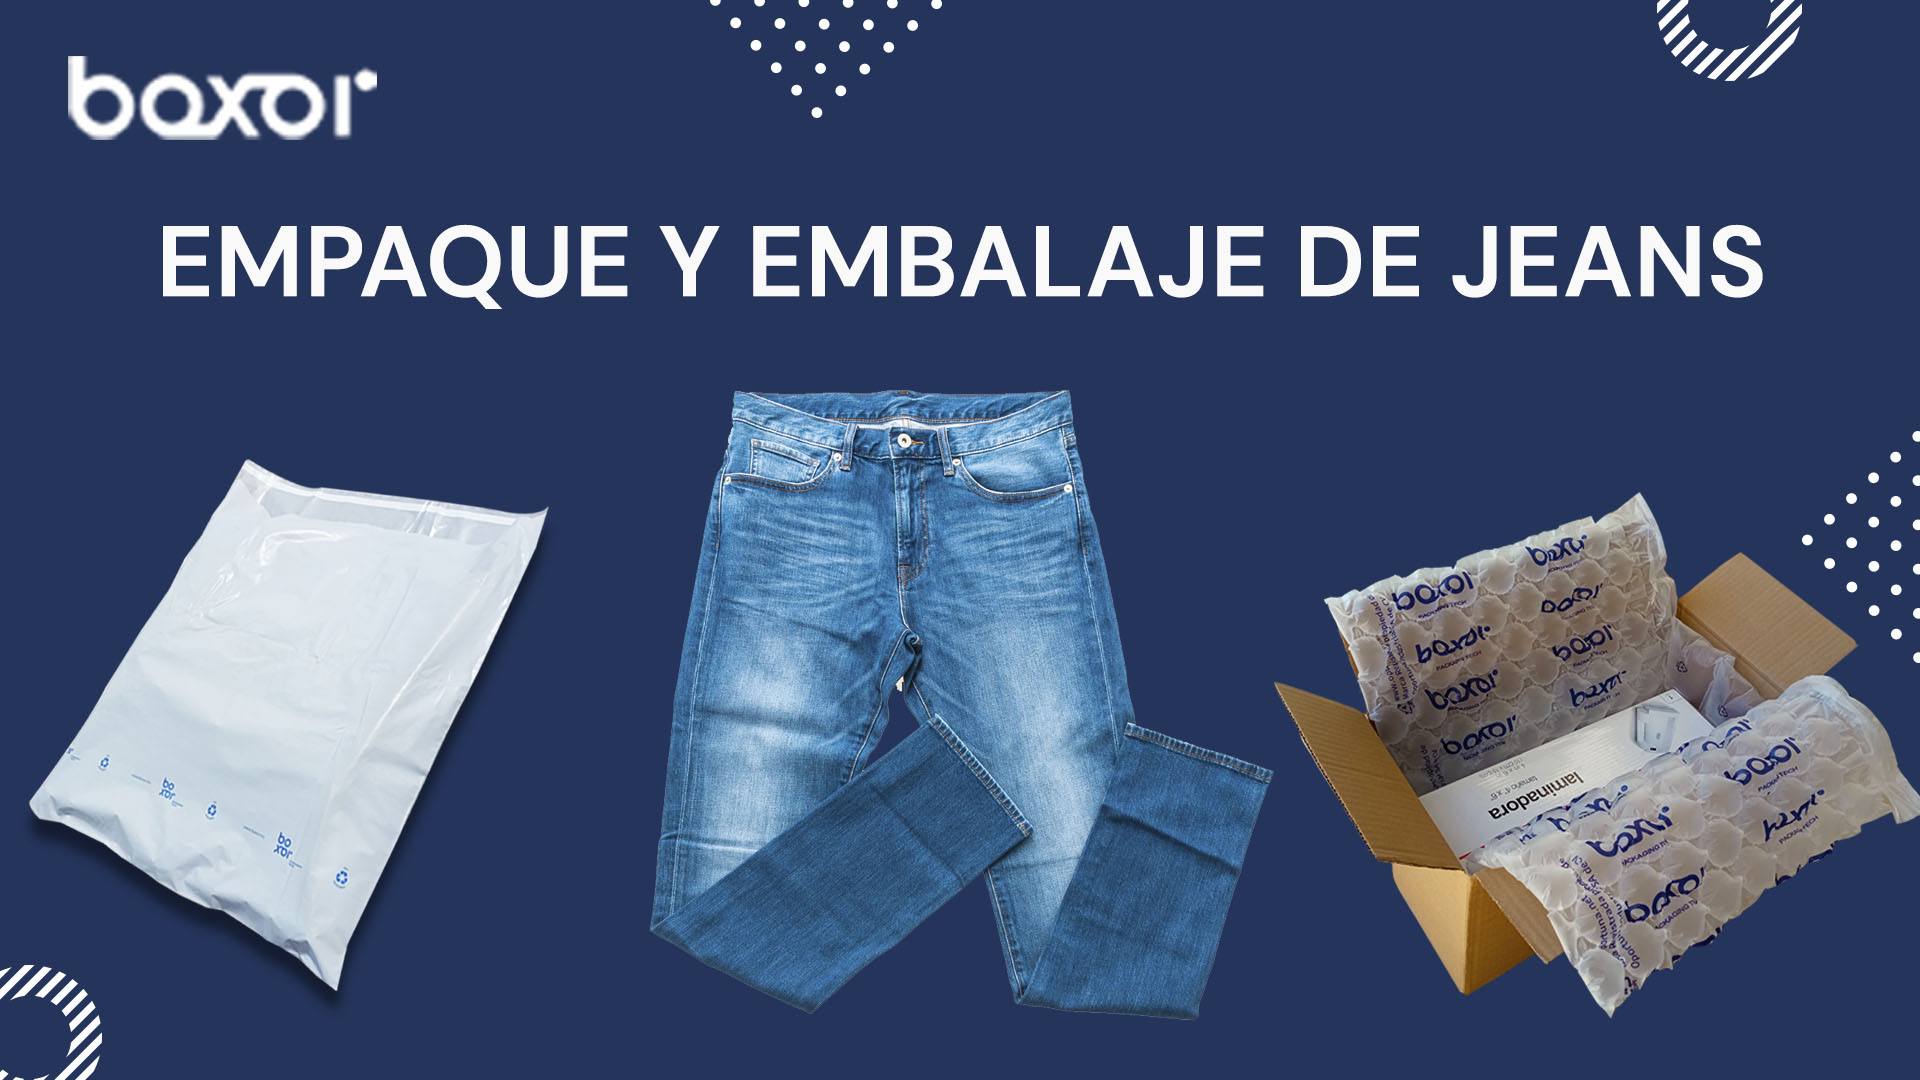 Empaque y embalaje de jeans Empaque y embalaje de jeans consejos- Boxor